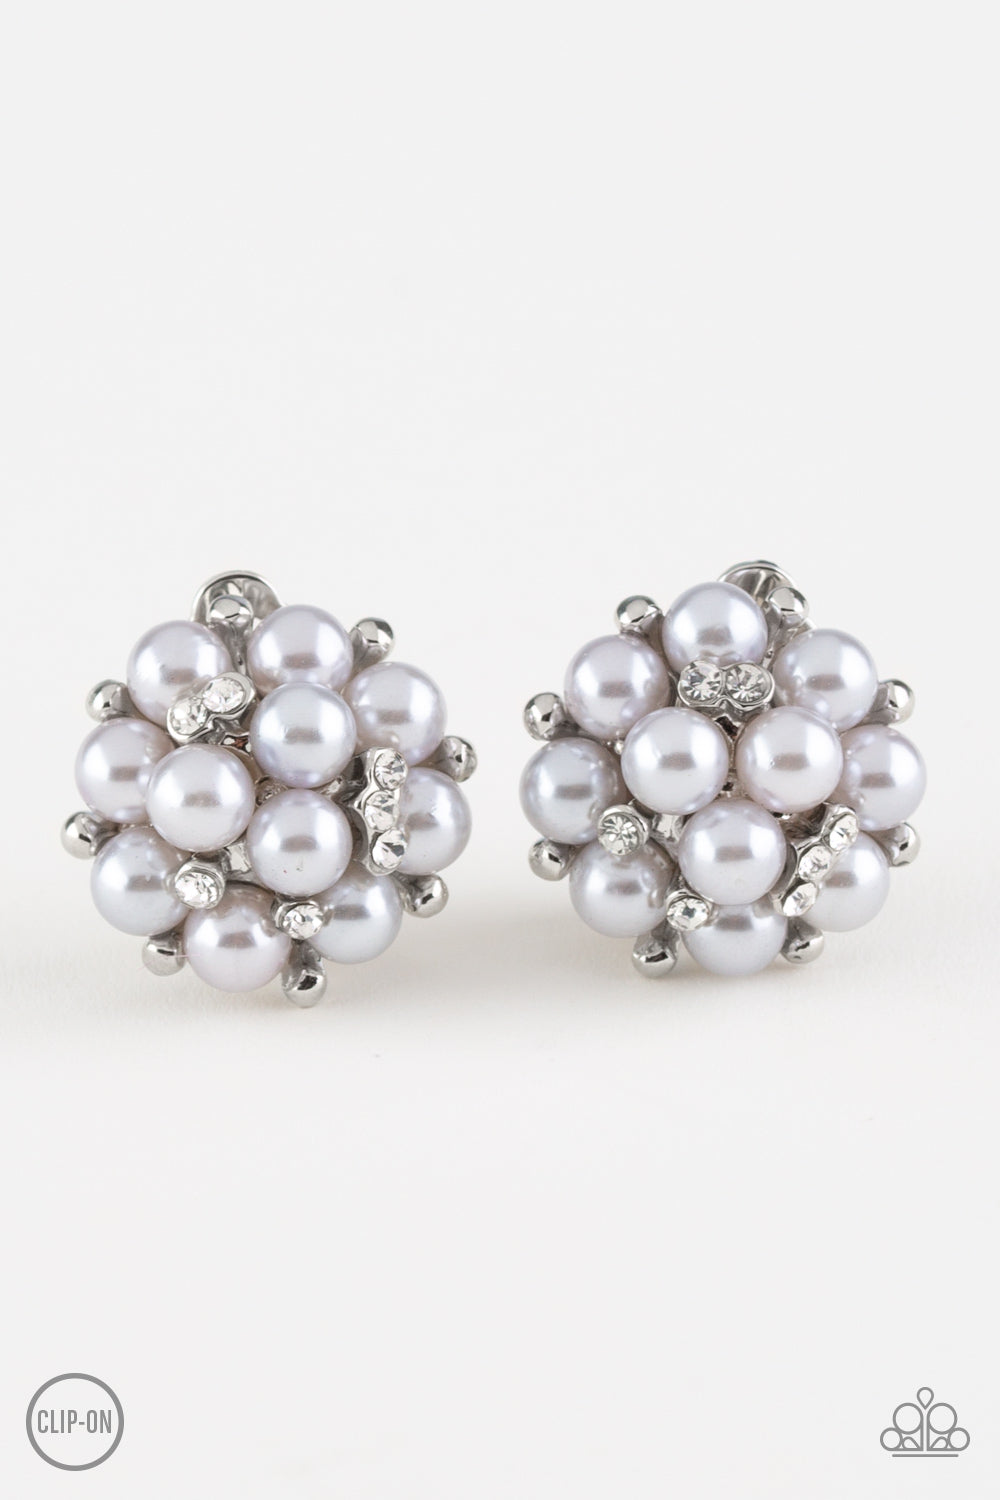 Par Pearl Silver Clip Earrings - Daria's Blings N Things